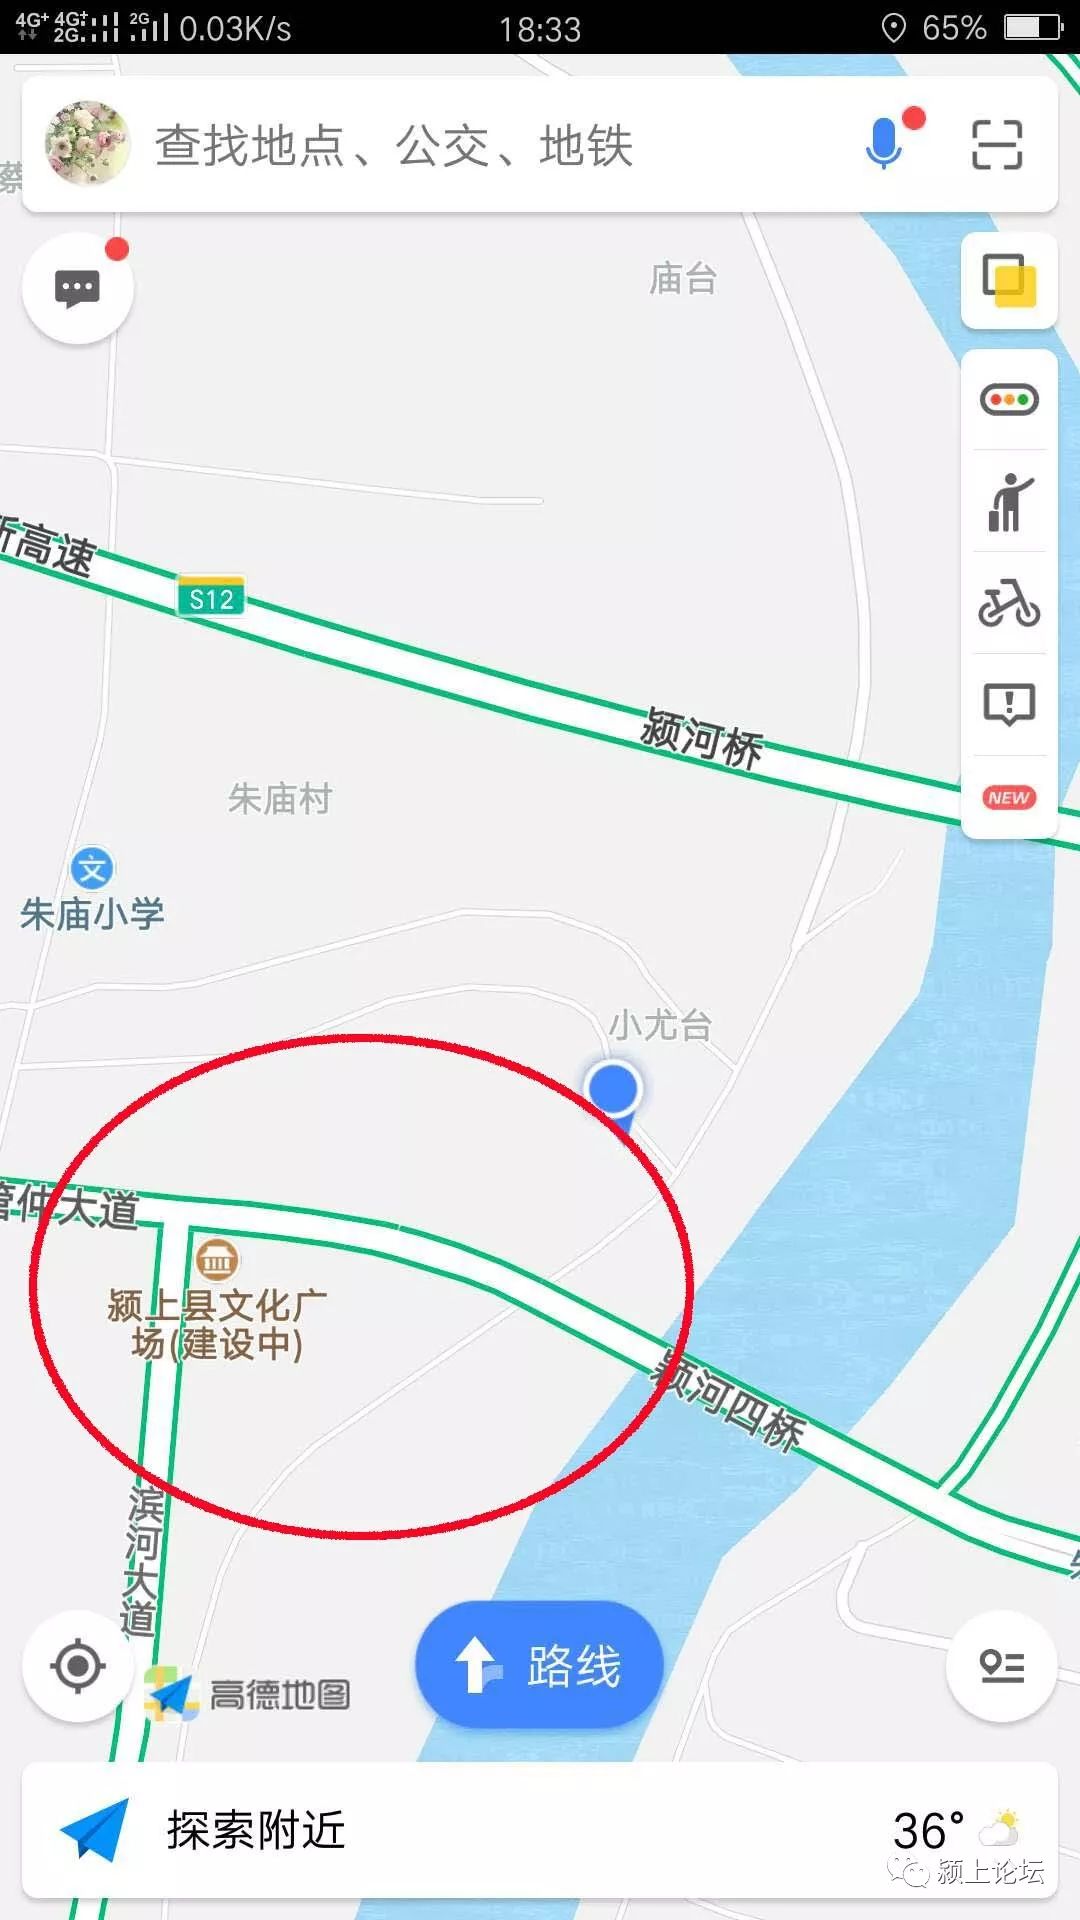 颍上滨河文化广场位于管仲大道与滨河大道交叉口(高德地图)图片